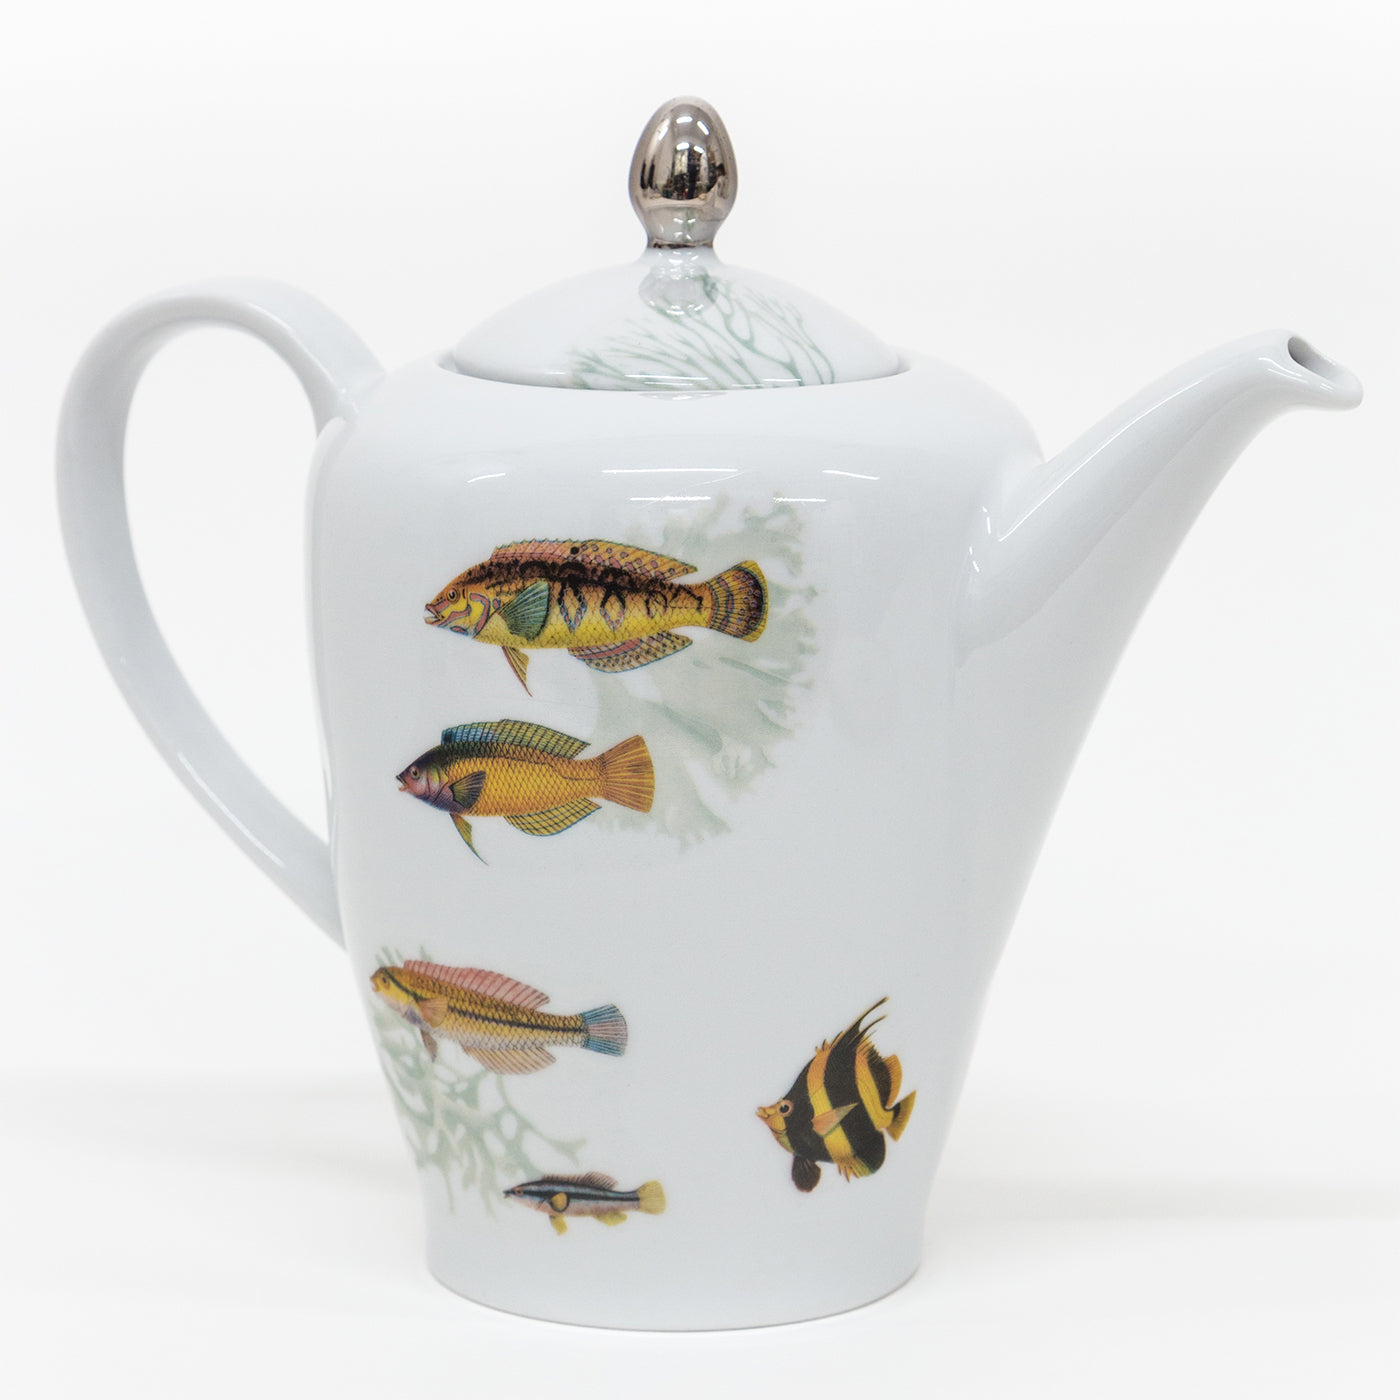 Juego de té de porcelana Amami con peces tropicales - Vista alternativa 2